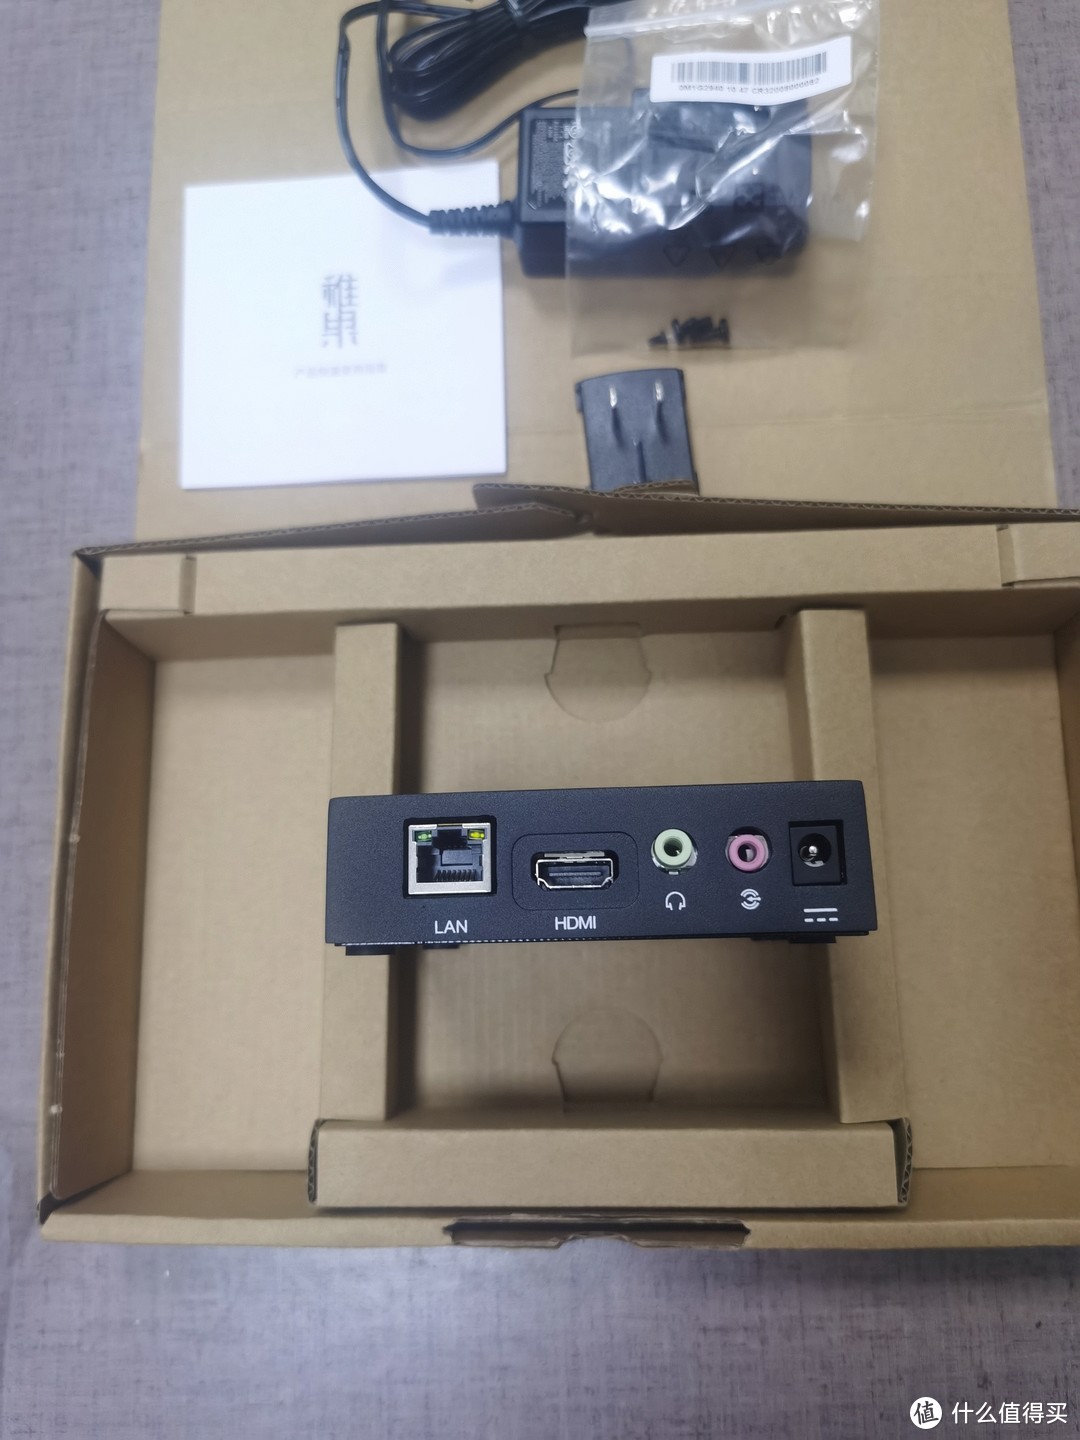 产品背面：一个lan网口、一个HDMI视频接口、两个音频接口、一个圆形电源口